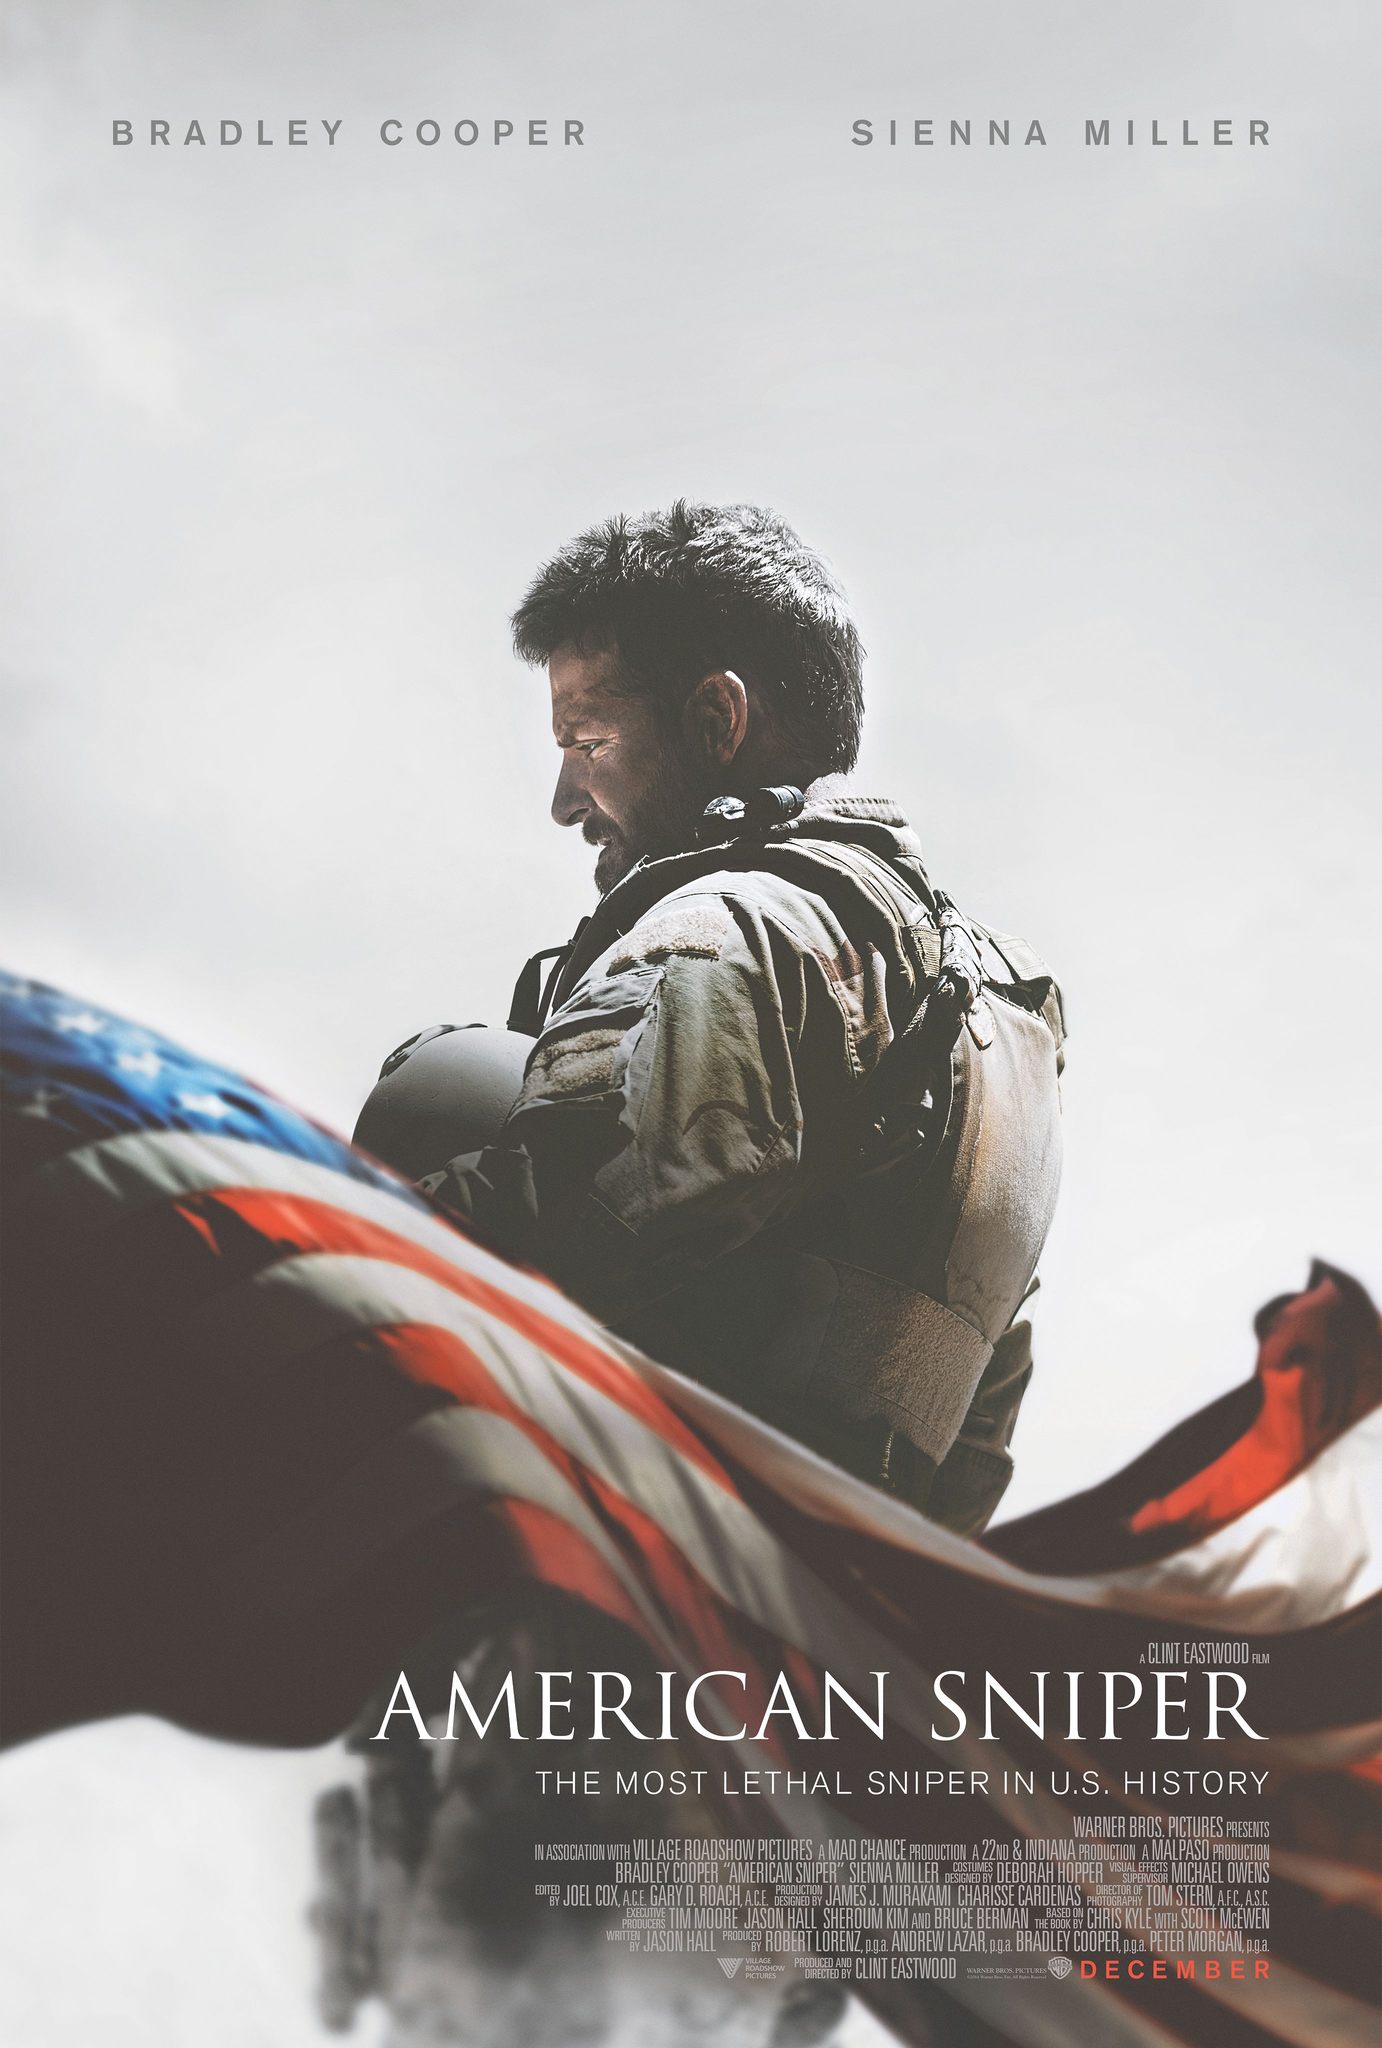 ดูหนังออนไลน์ฟรี American Sniper 2014 สไนเปอร์มือพระกาฬ แห่งประวัติศาสตร์อเมริกา